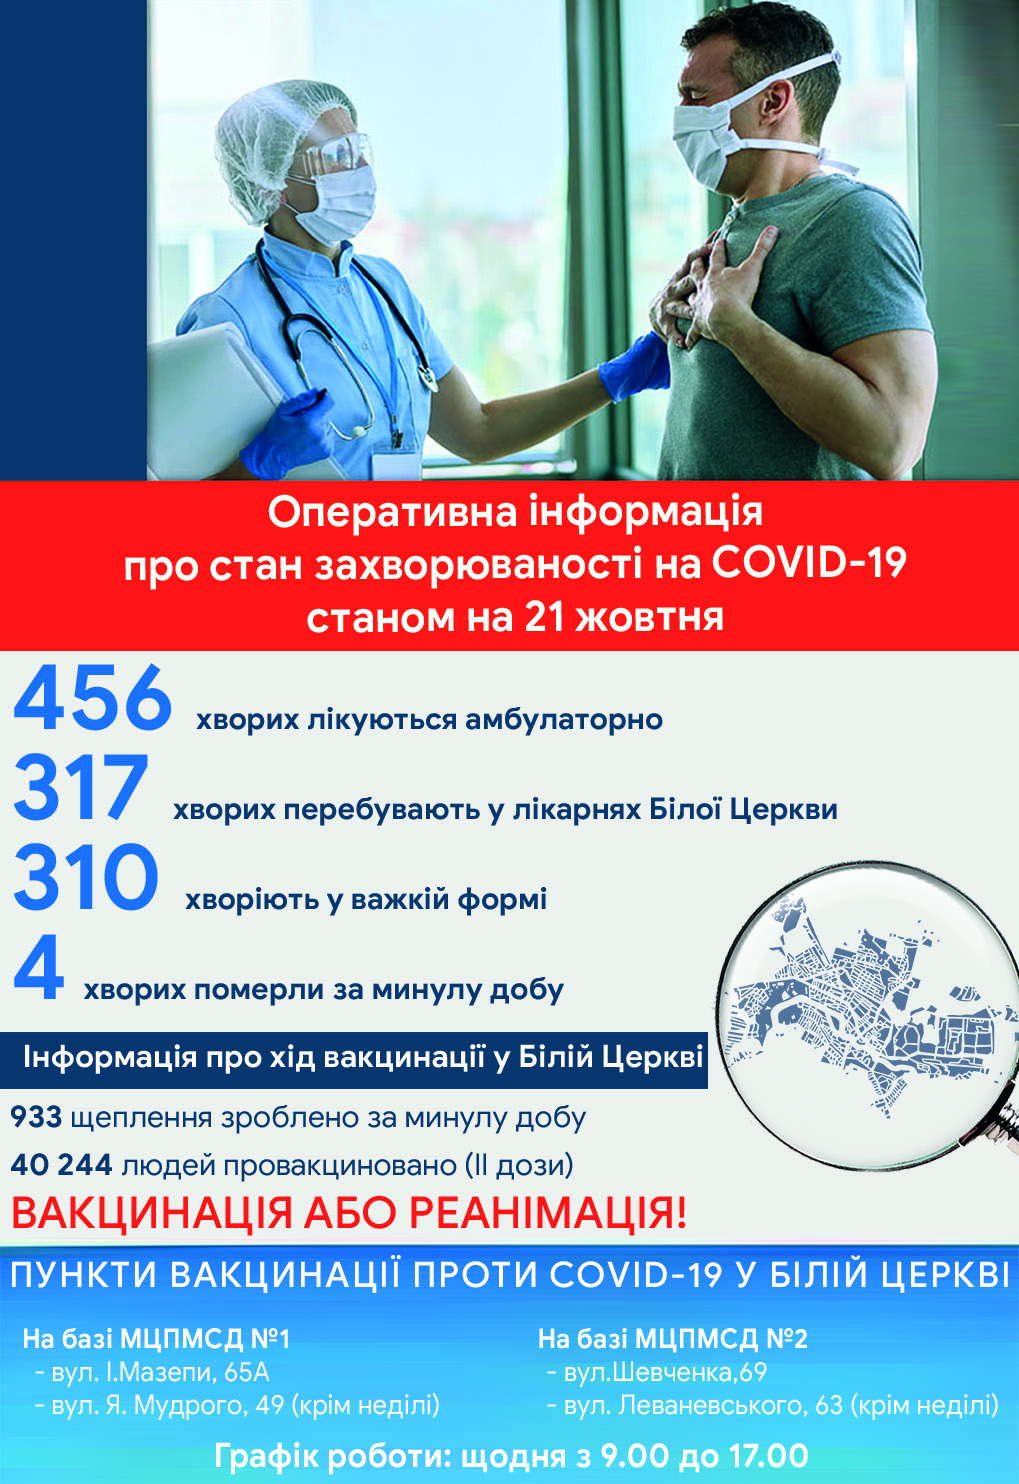 Оперативна інформація про стан захворюваності на COVID-19 станом на 21 жовтня